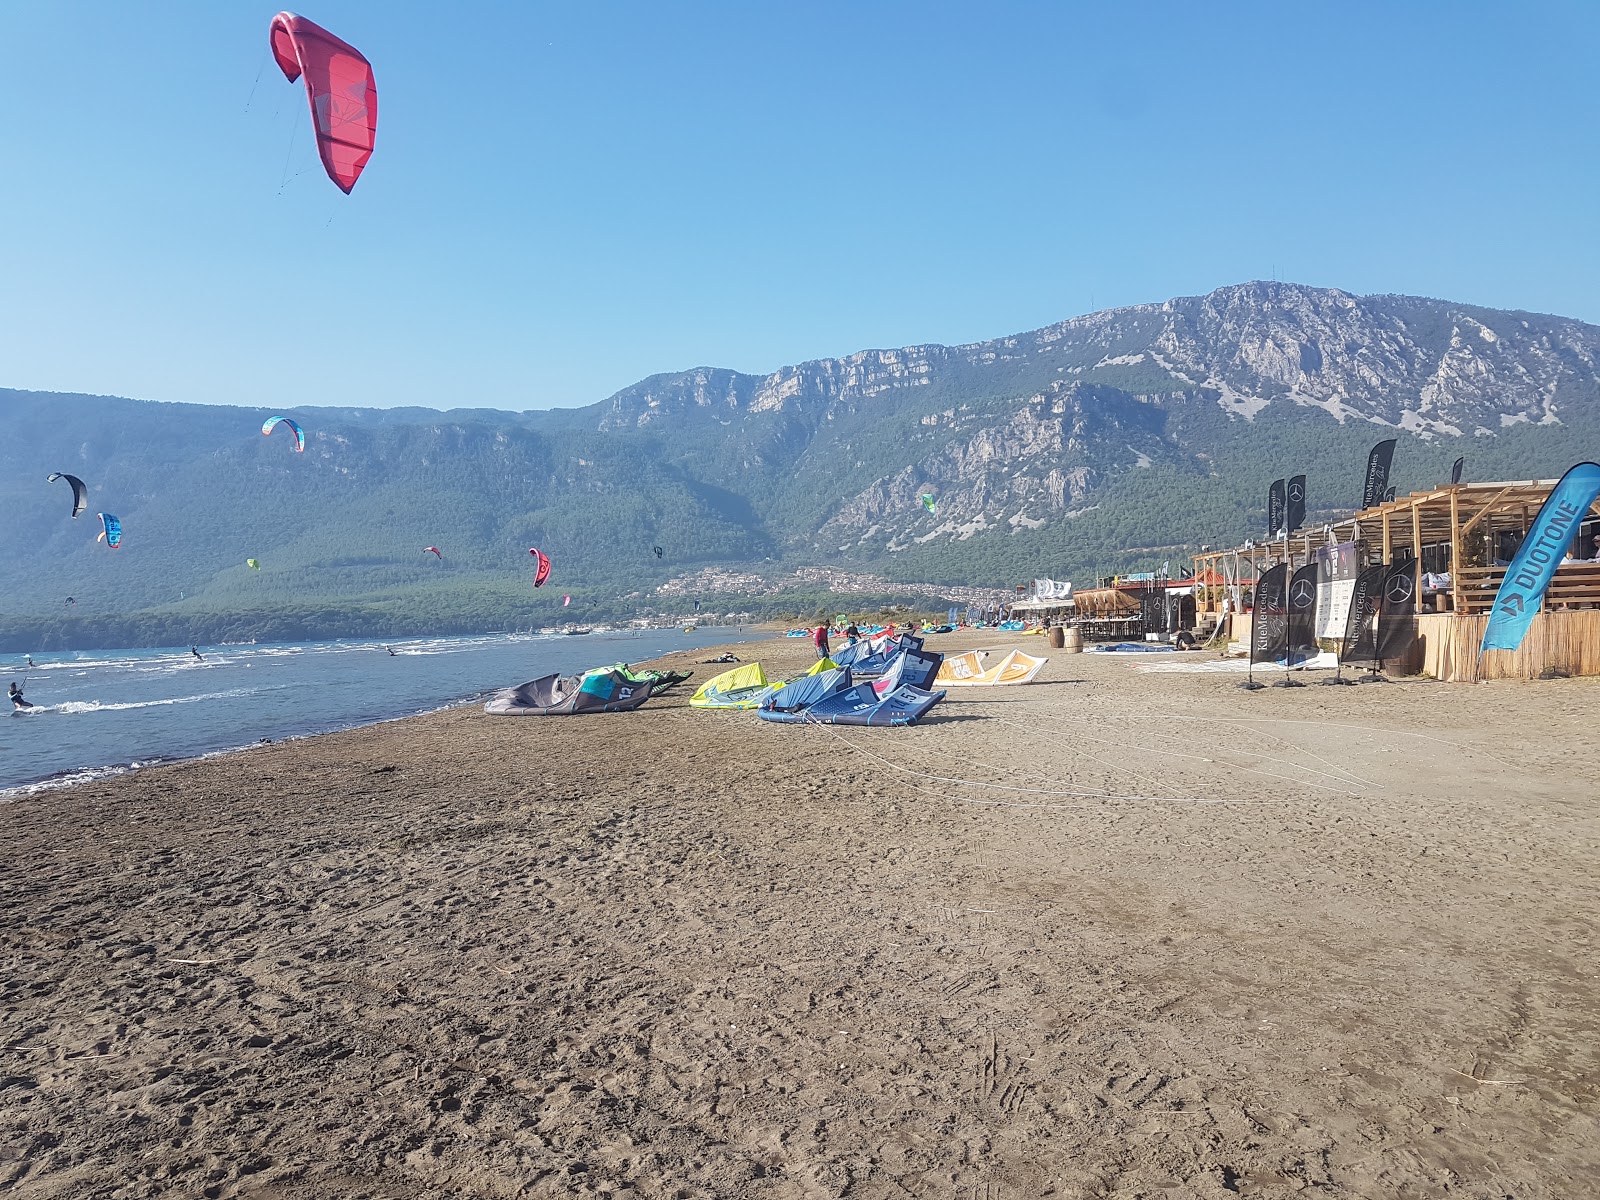 Gokova beach'in fotoğrafı geniş plaj ile birlikte